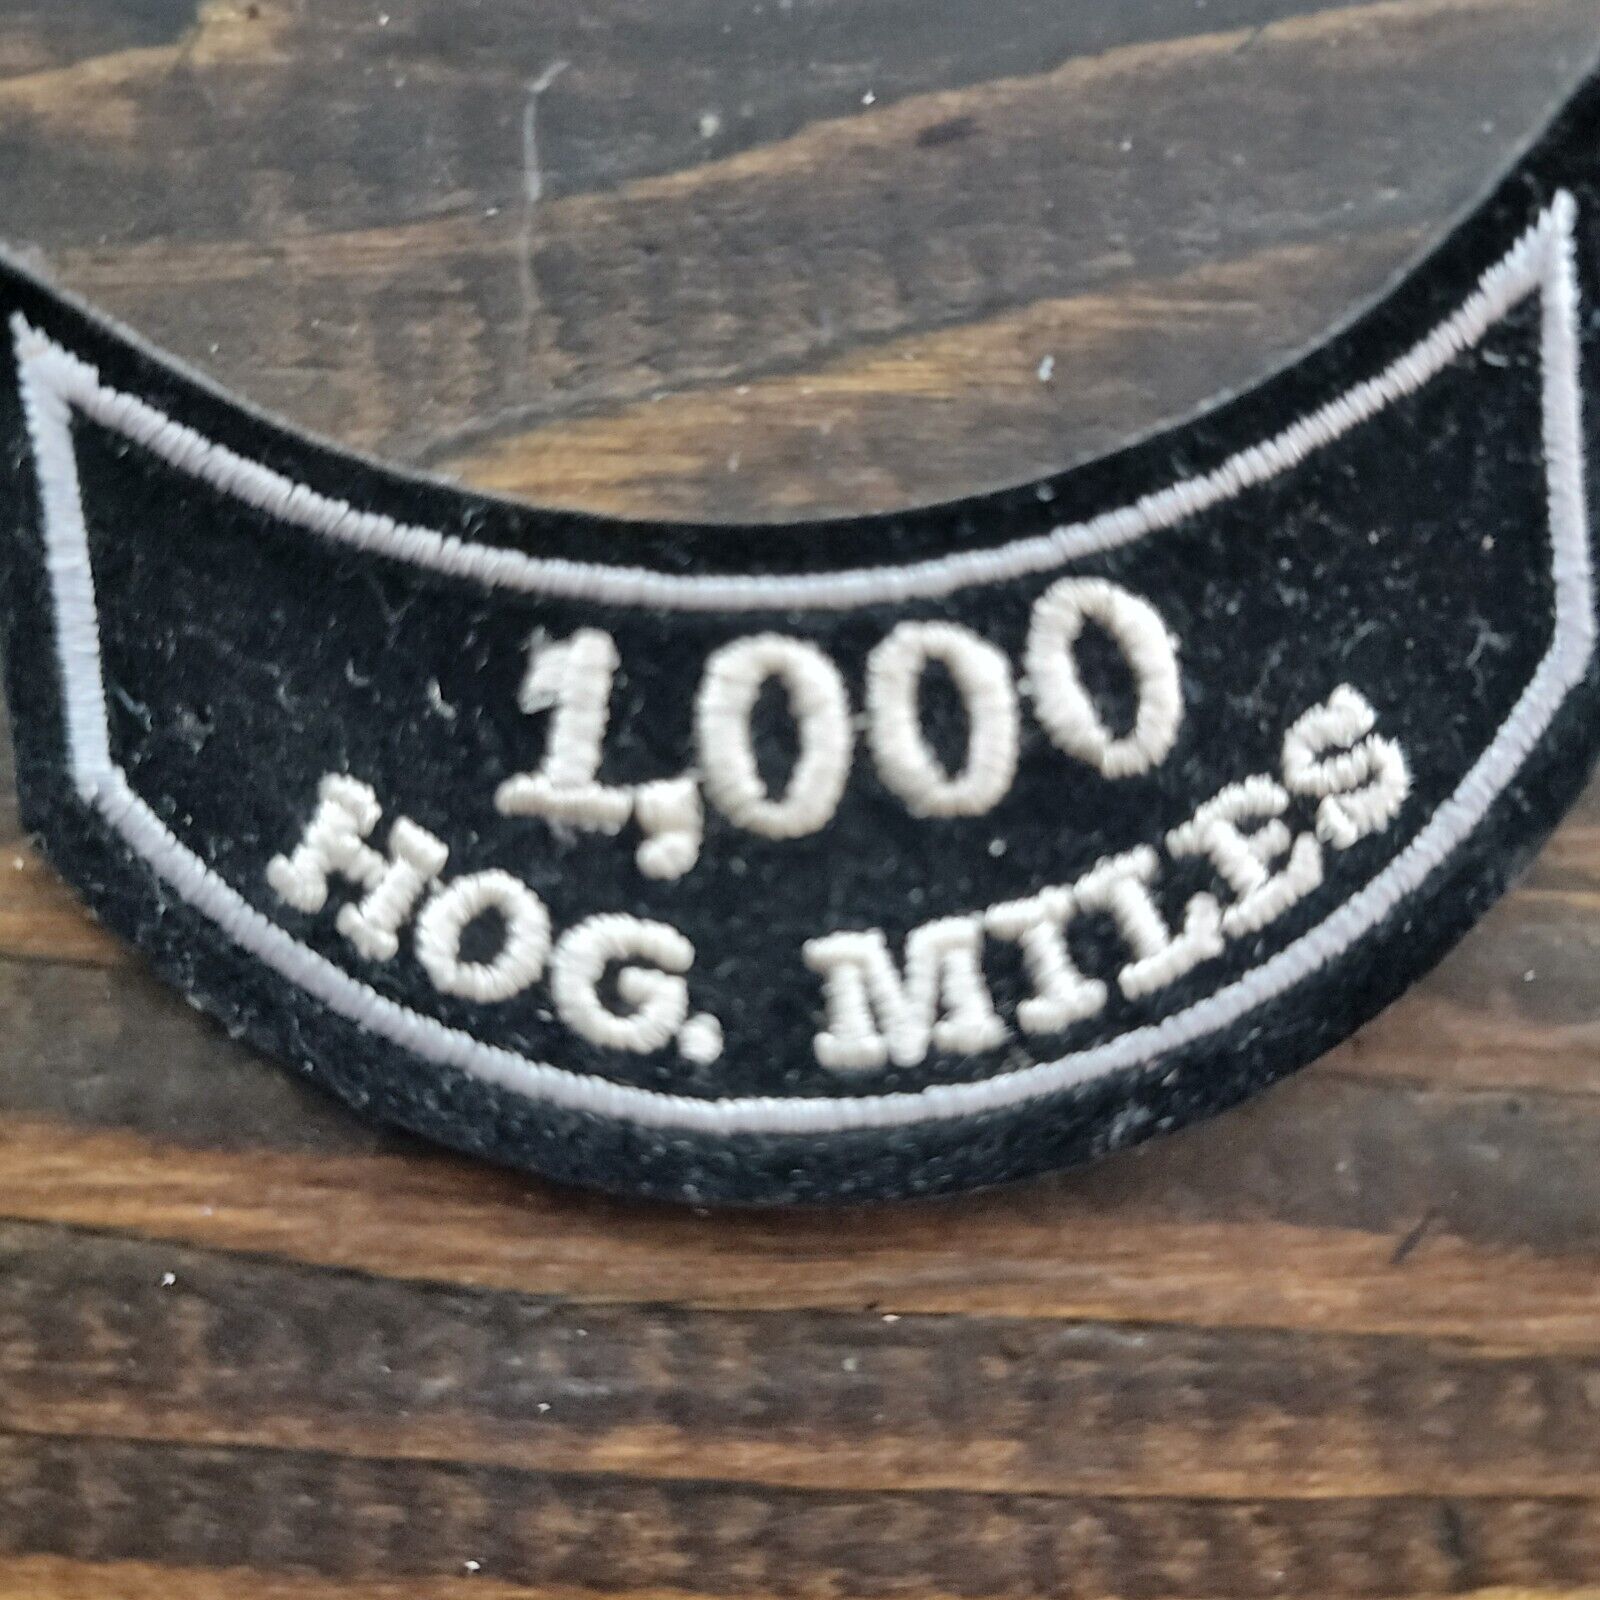 HARLEY-DAVIDSON OWNERS GROUP  HOG Mileage 1,000 MILES VEST JACKET PATCH Rocker